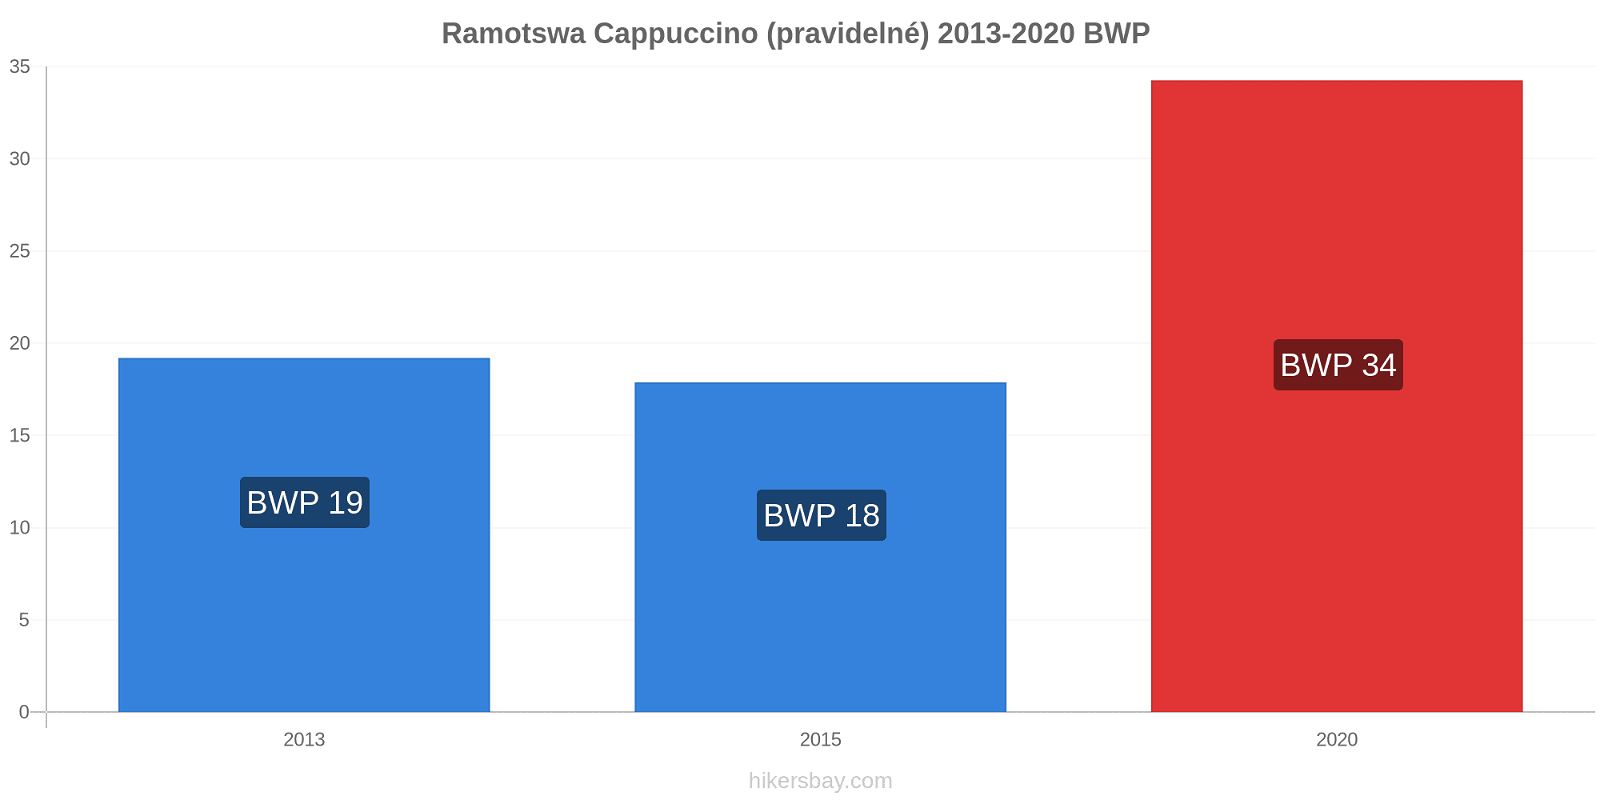 Ramotswa změny cen Cappuccino (pravidelné) hikersbay.com